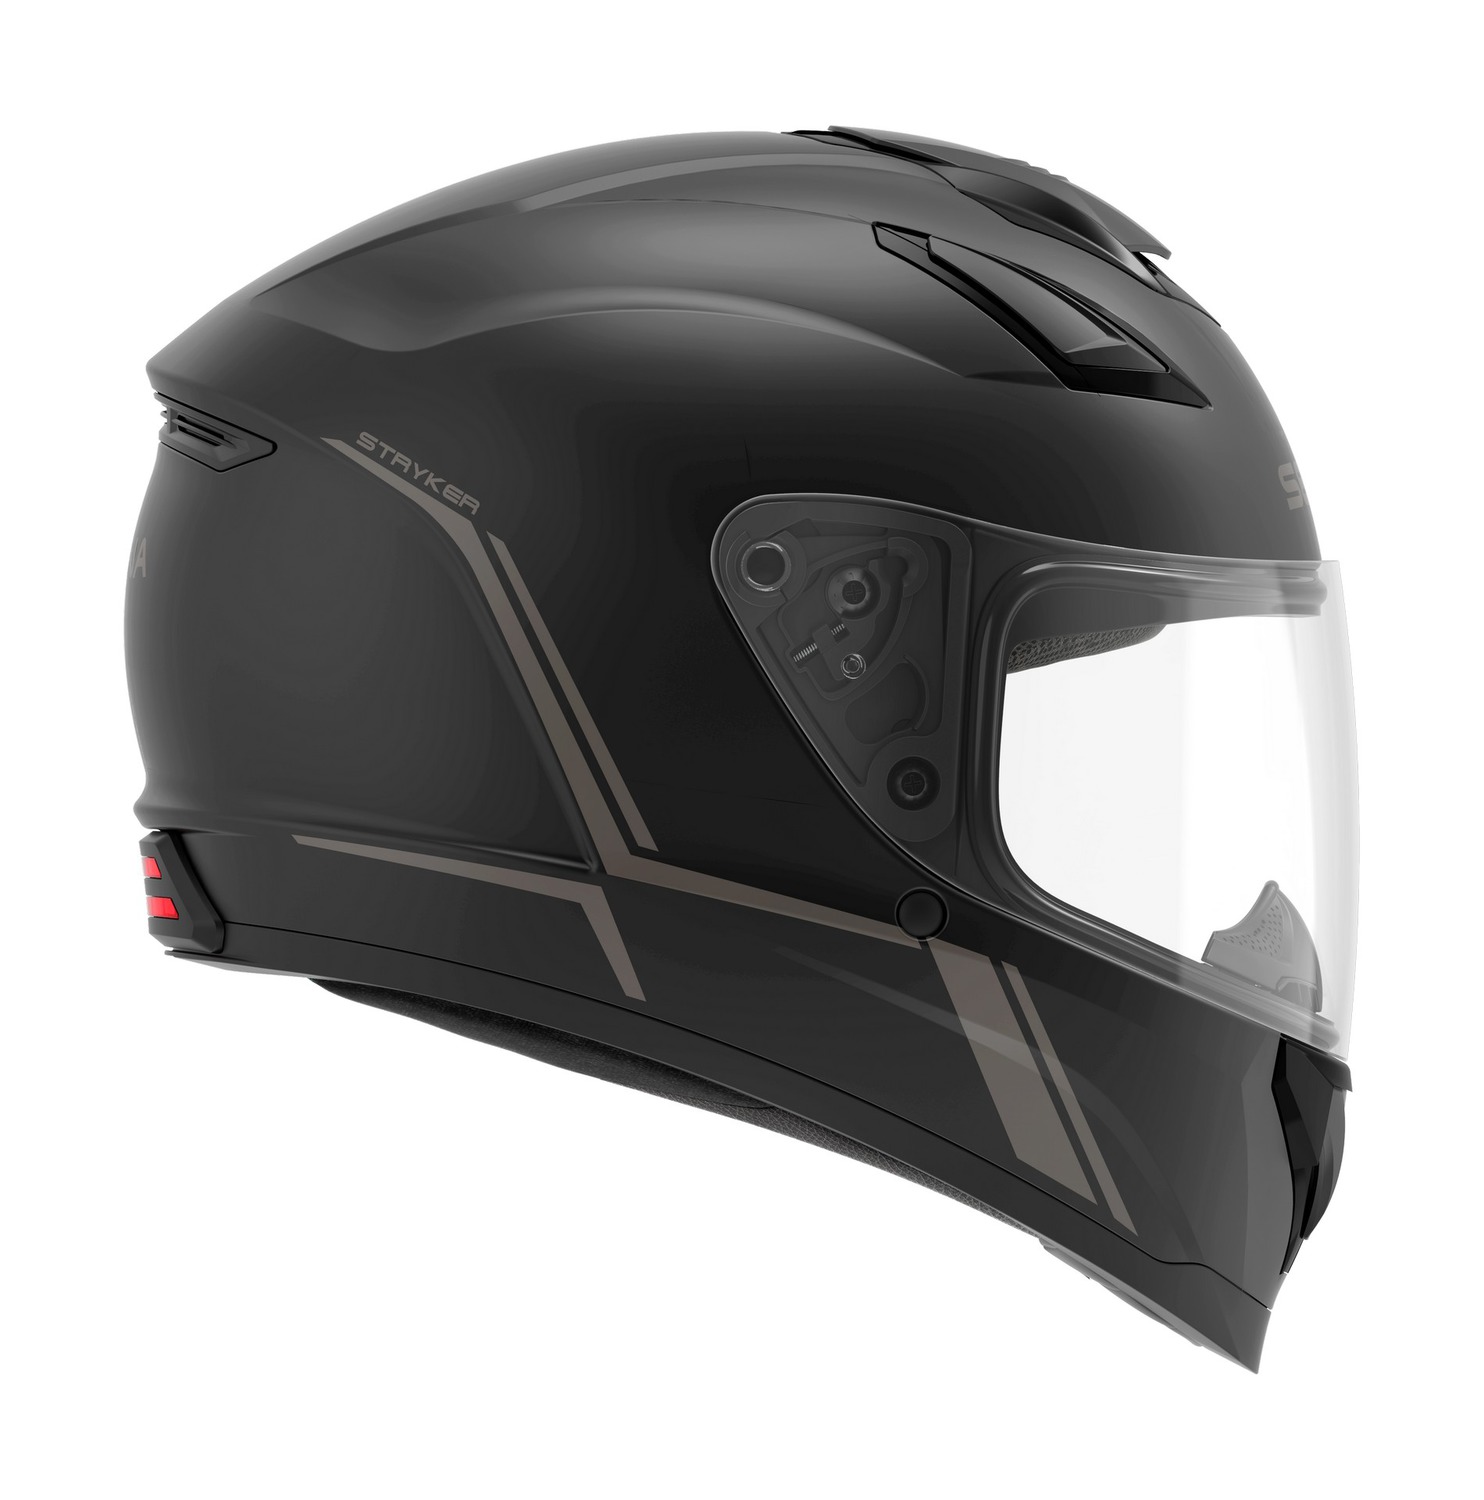 Stryker, Motorcycle Smart Helmet with Mesh Intercom, Full-face, Matt Black